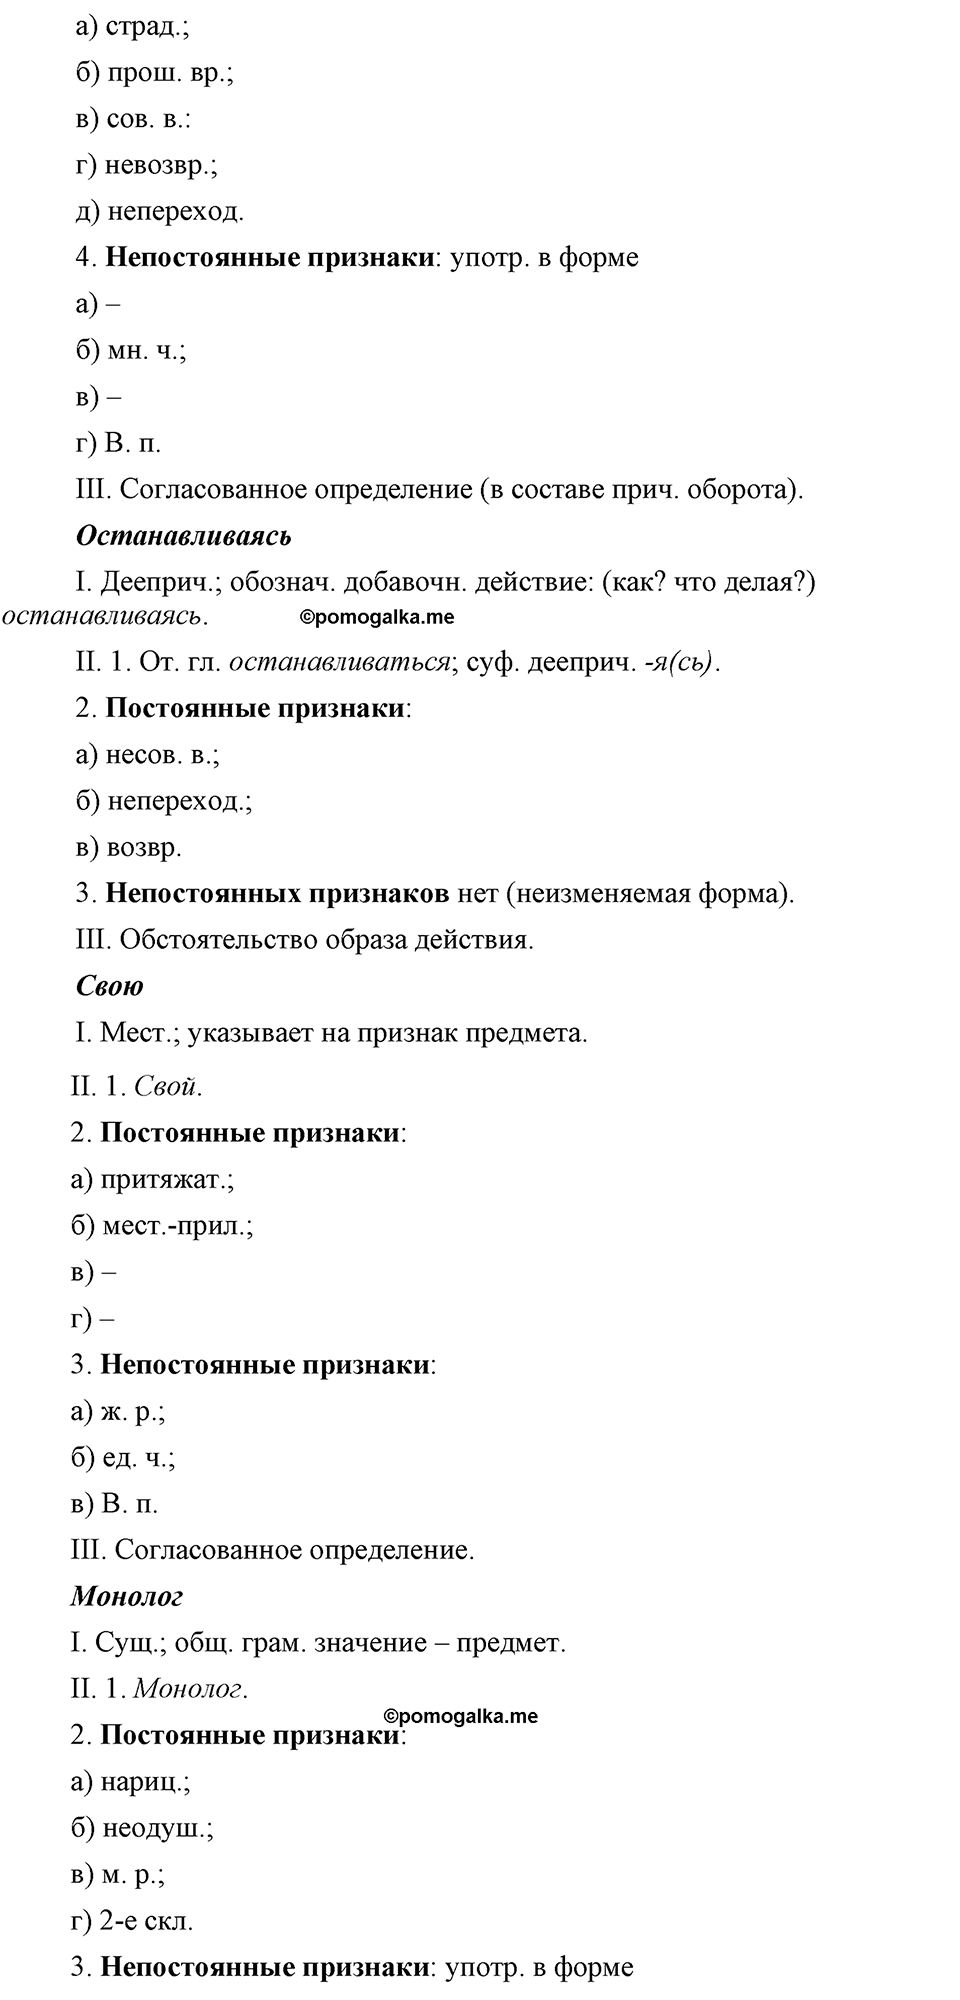 страница 166 номер 371 русский язык 9 класс Бархударов 2011 год